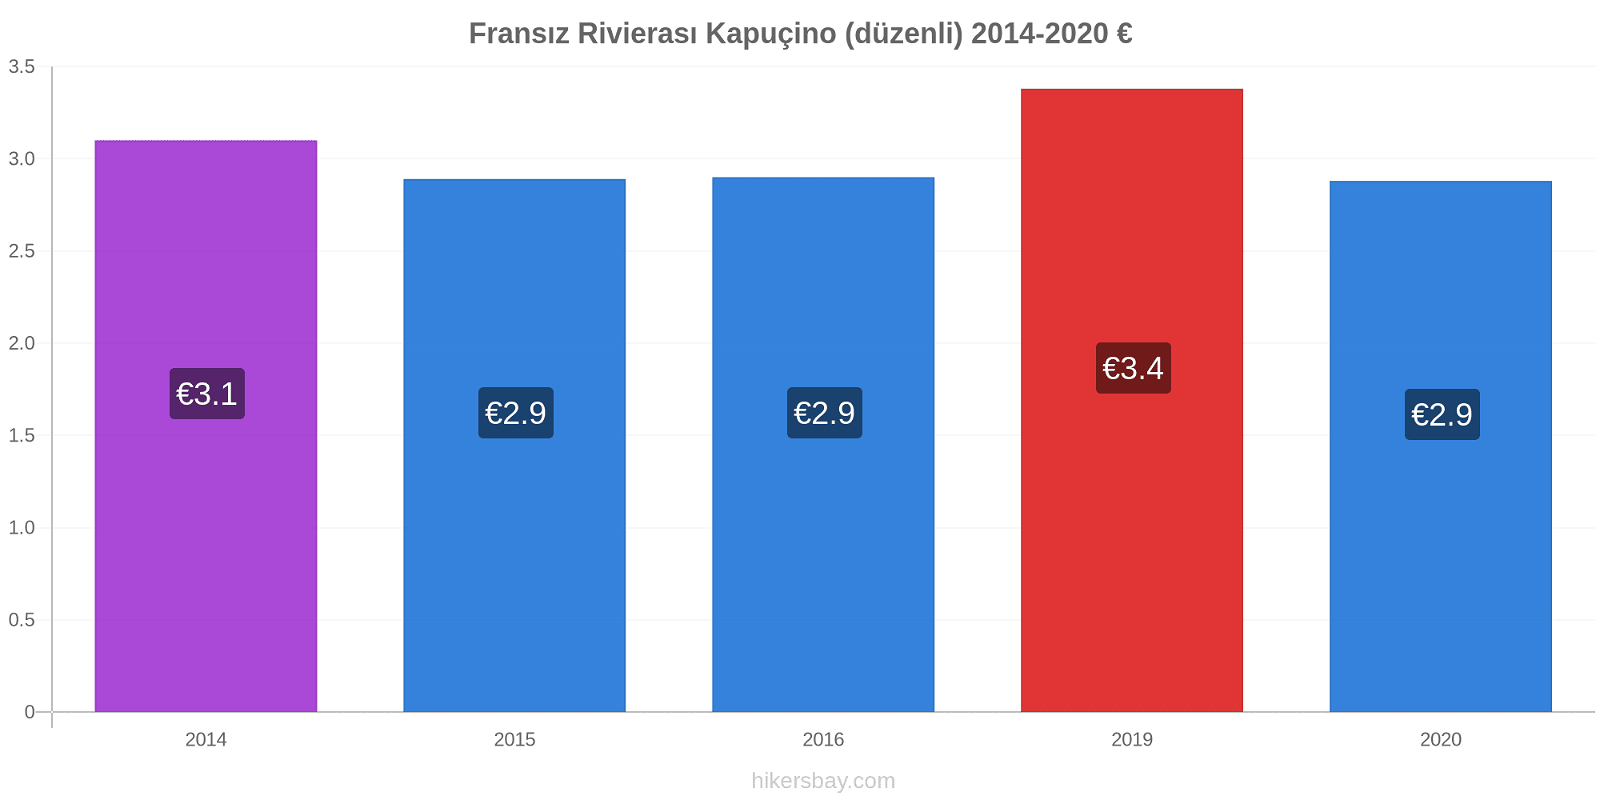 Fransız Rivierası fiyat değişiklikleri Kapuçino (düzenli) hikersbay.com